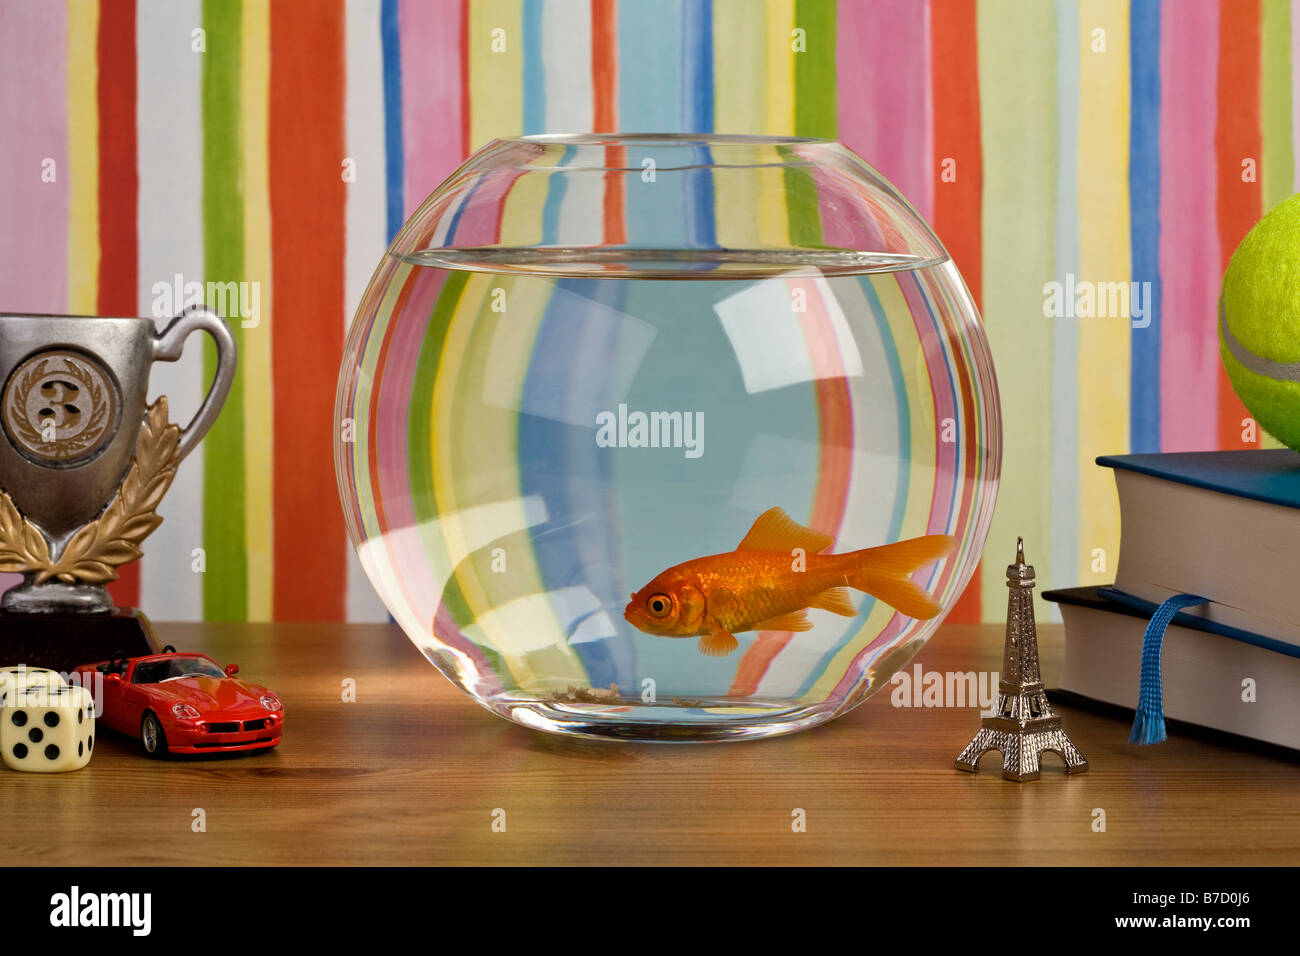 Un poisson rouge dans un aquarium sur une table avec divers bibelots knick Banque D'Images